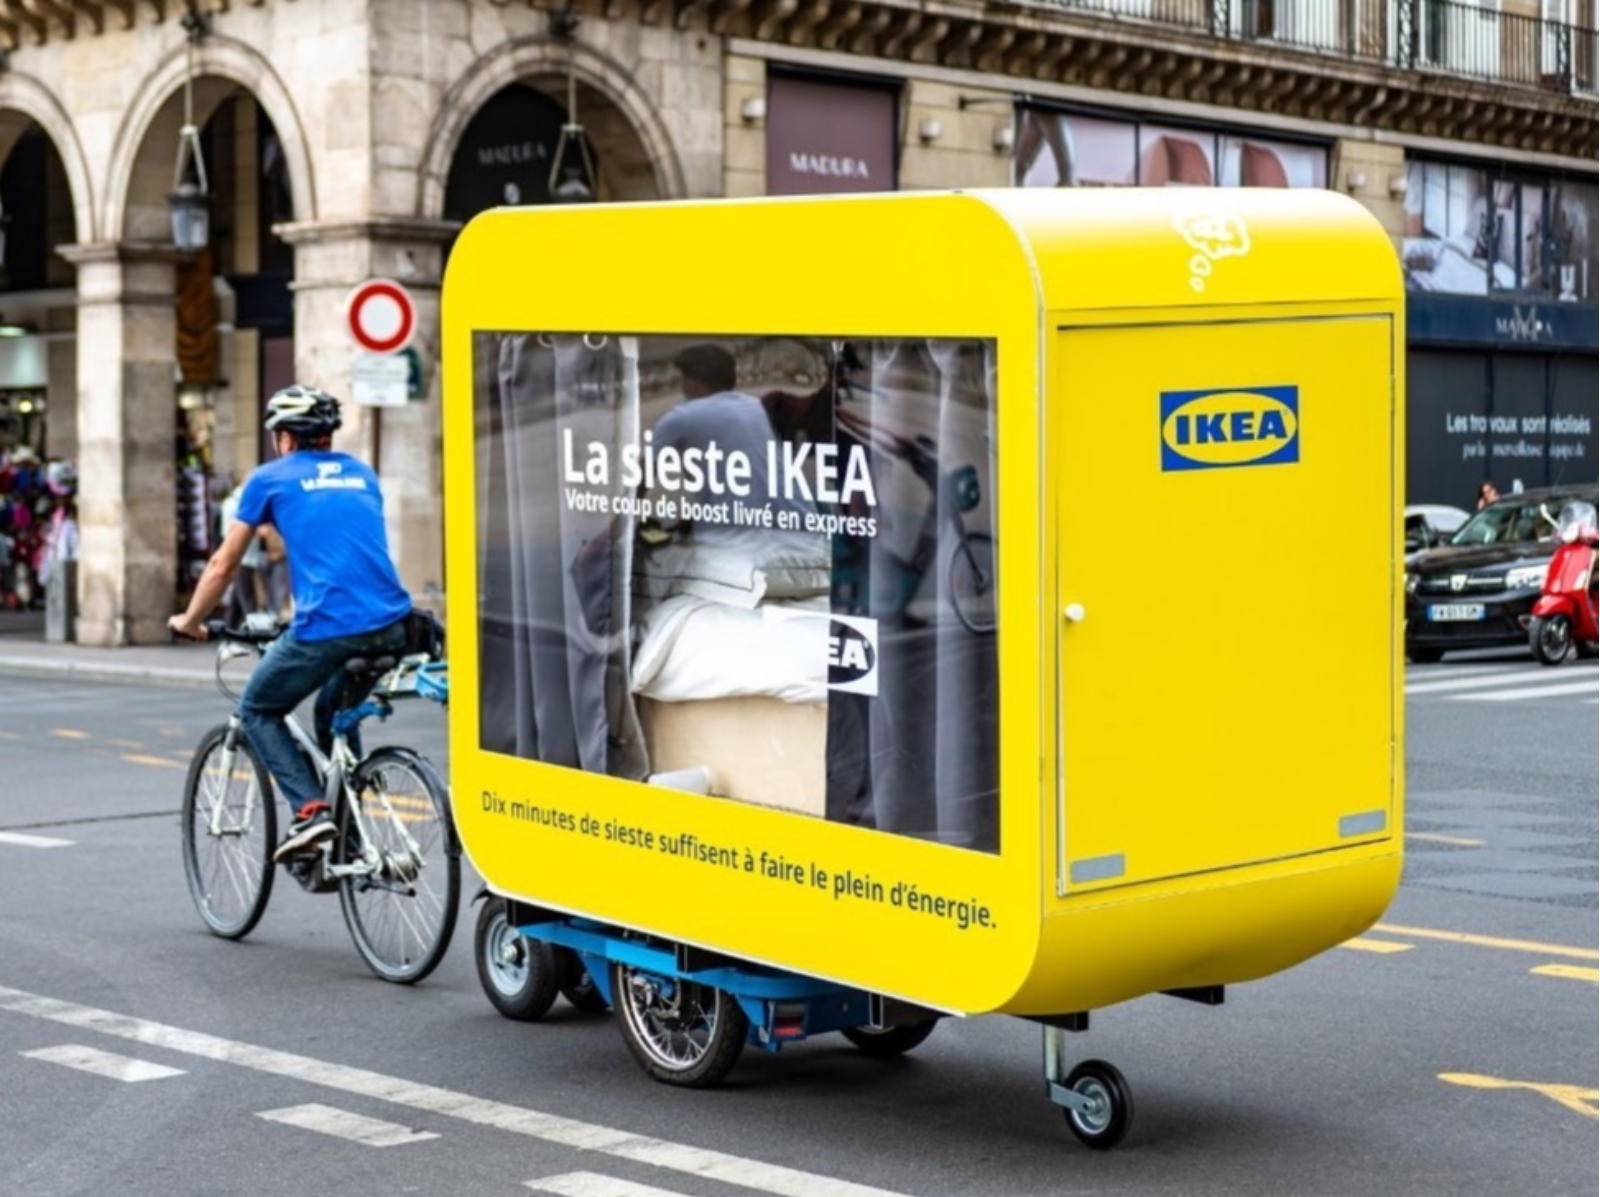 IKEA 推出「移動式睡眠艙」讓你在裡面睡午覺，老司機一看就笑了～